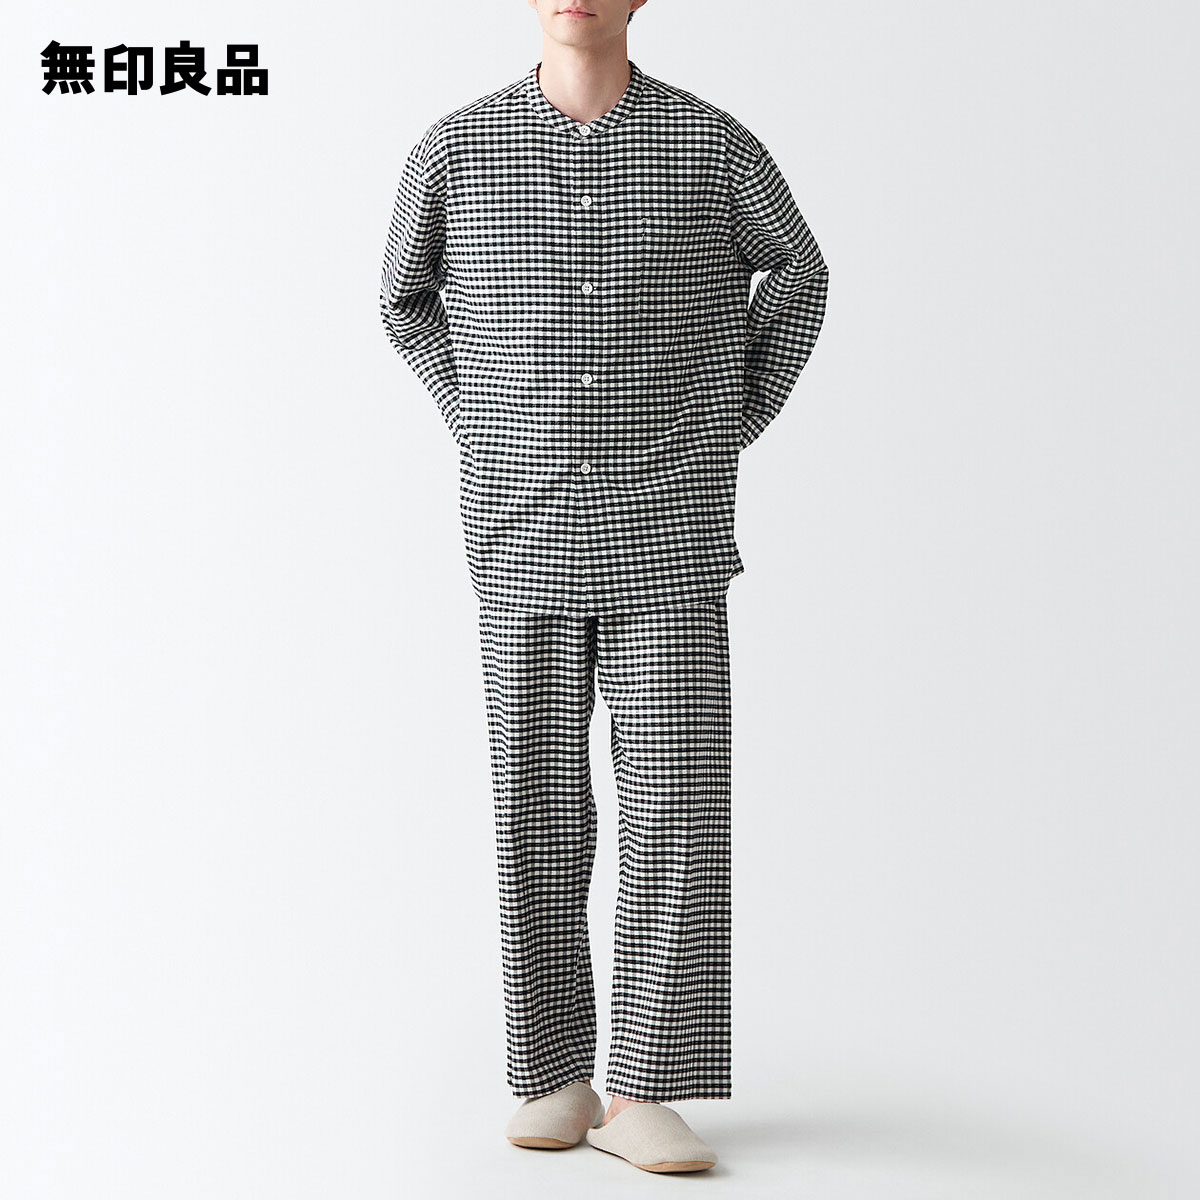 無印良品 公式 超特価SALE開催 超高品質で人気の 脇に縫い目のないフランネルスタンドカラーパジャマ 紳士